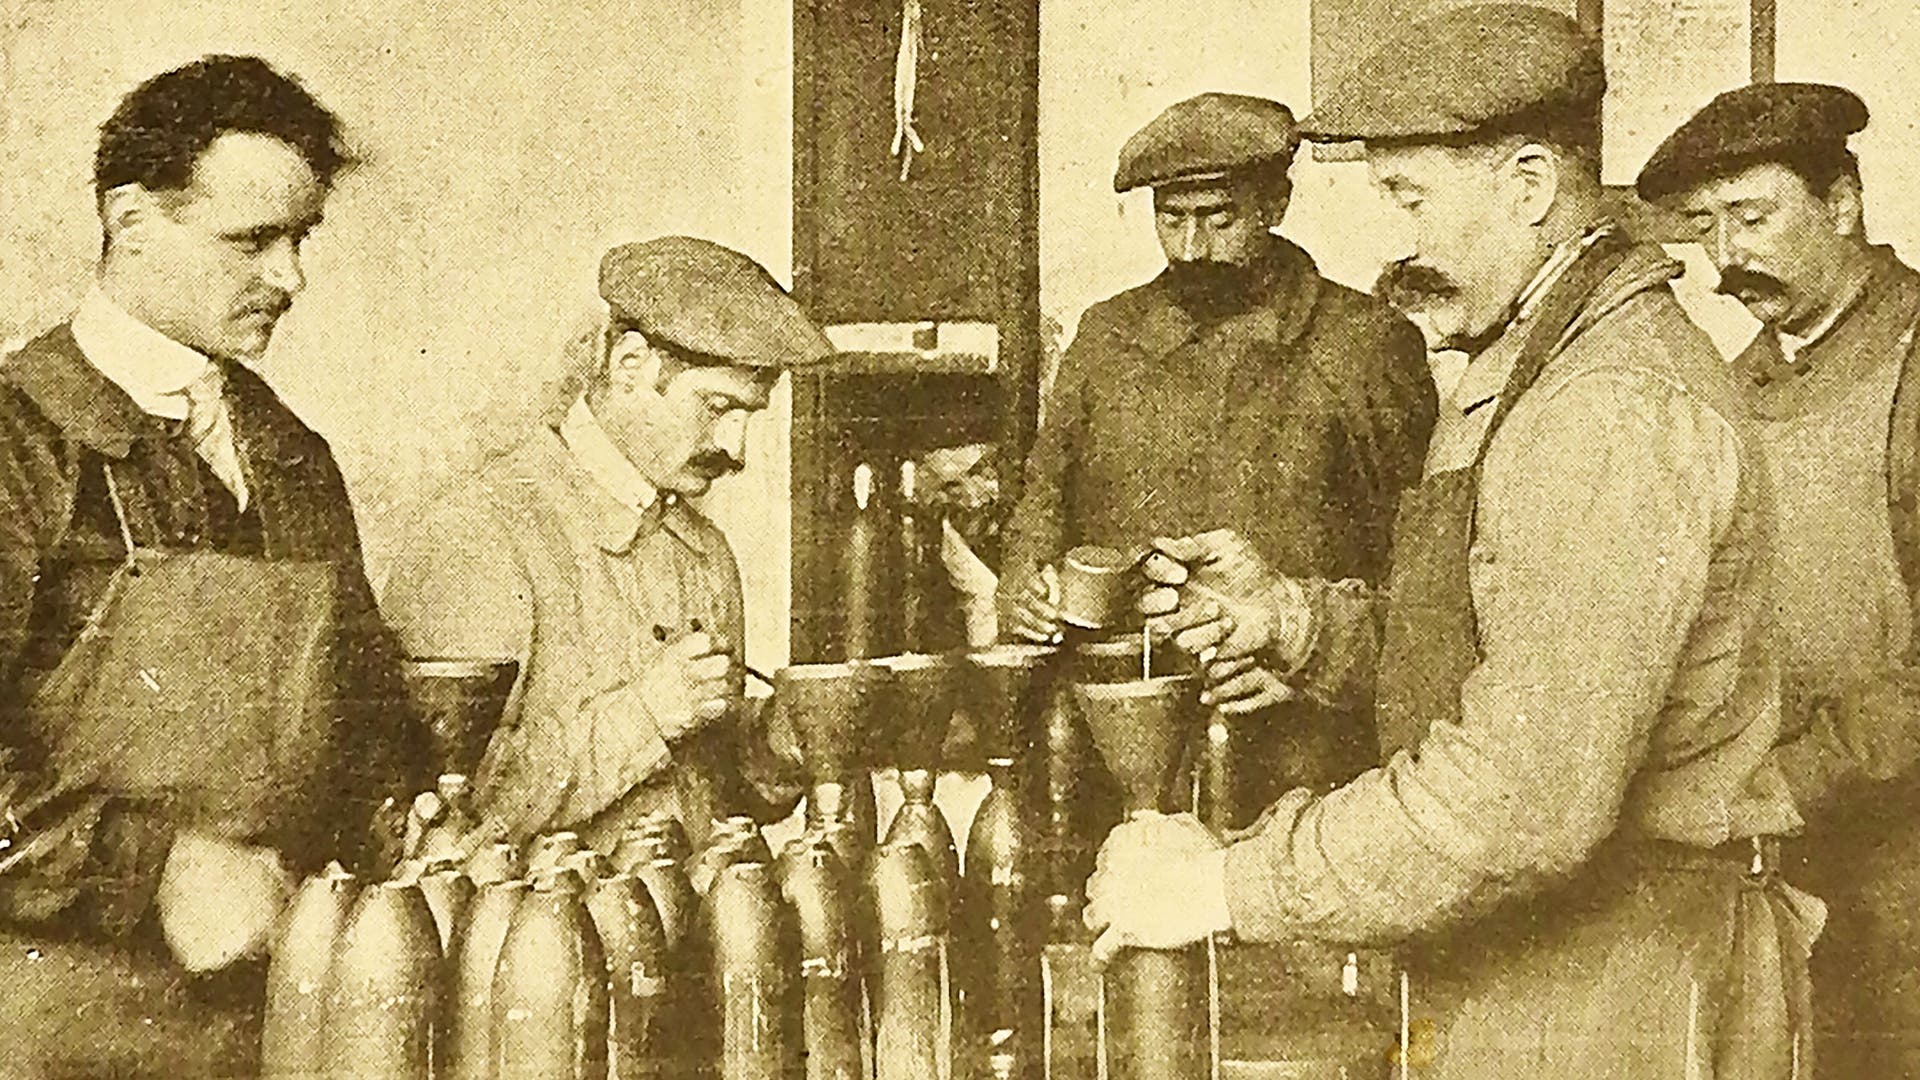 Sprengstoffherstellung im Ersten Weltkrieg